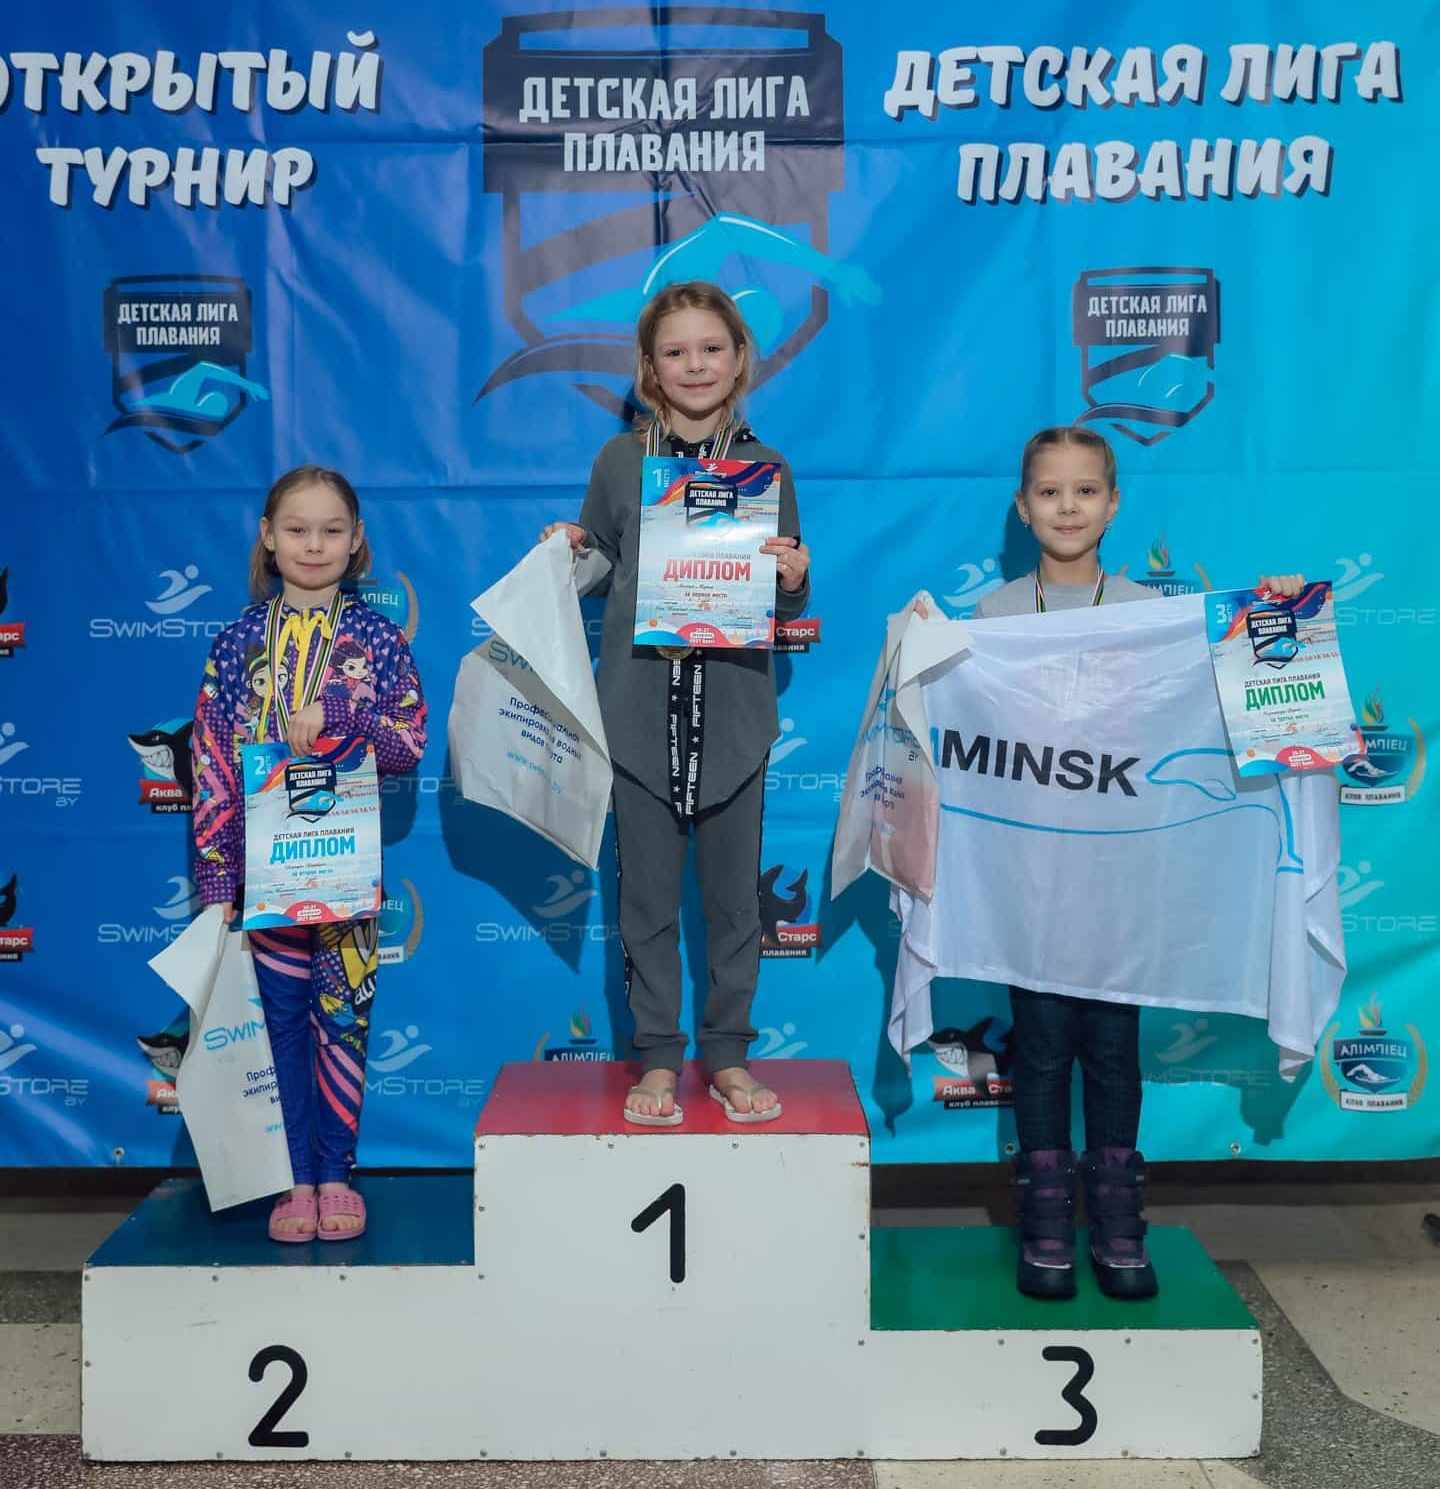 Свим Минск школа плавания для детей и взрослых